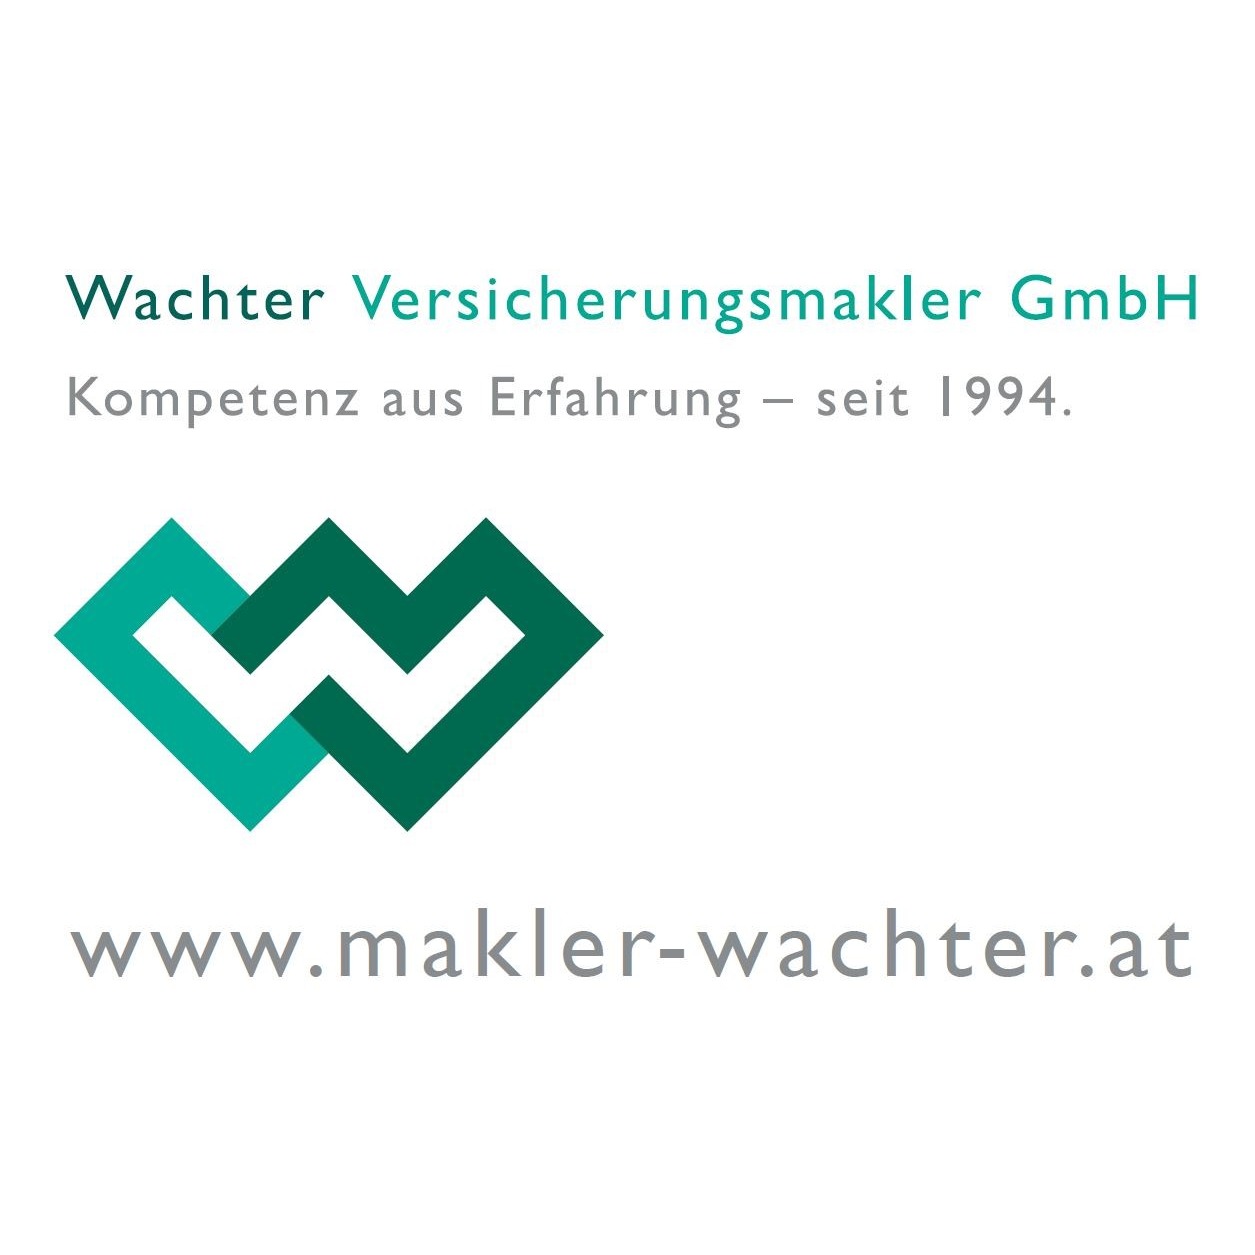 Wachter Versicherungsmakler GmbH Logo